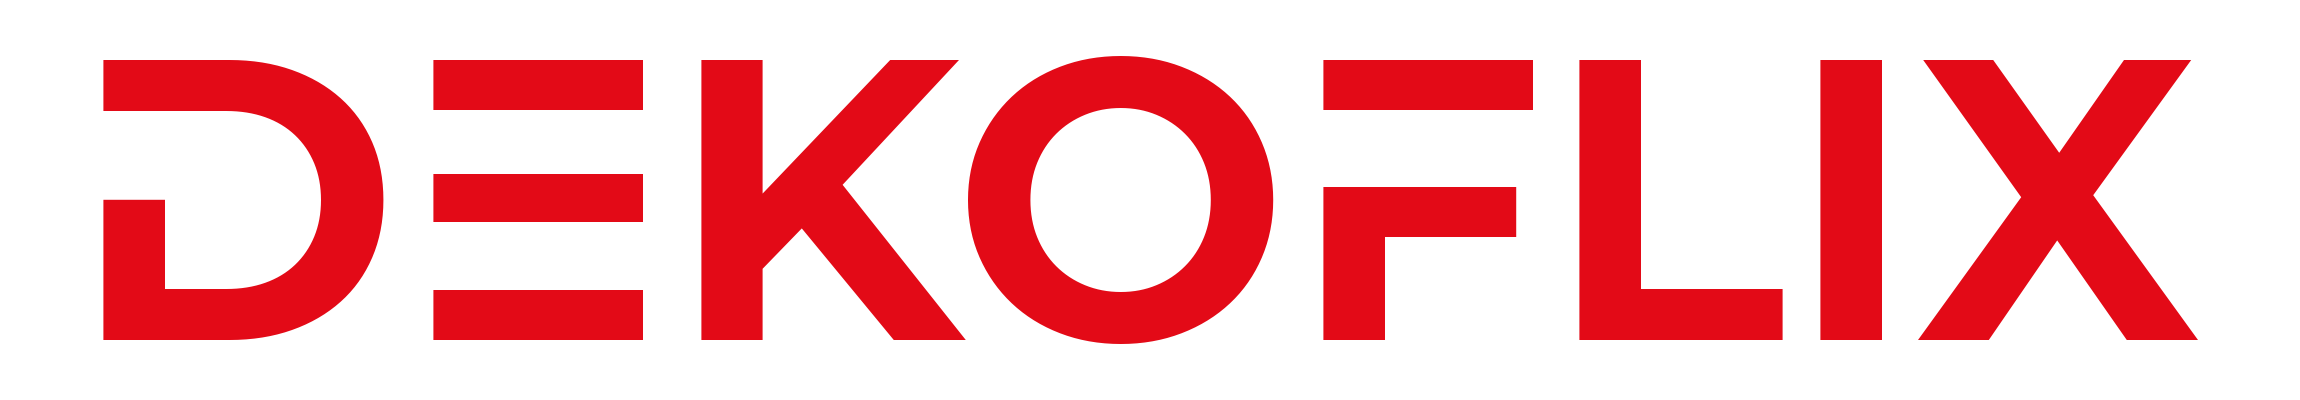 logo-dekoflix.2.png